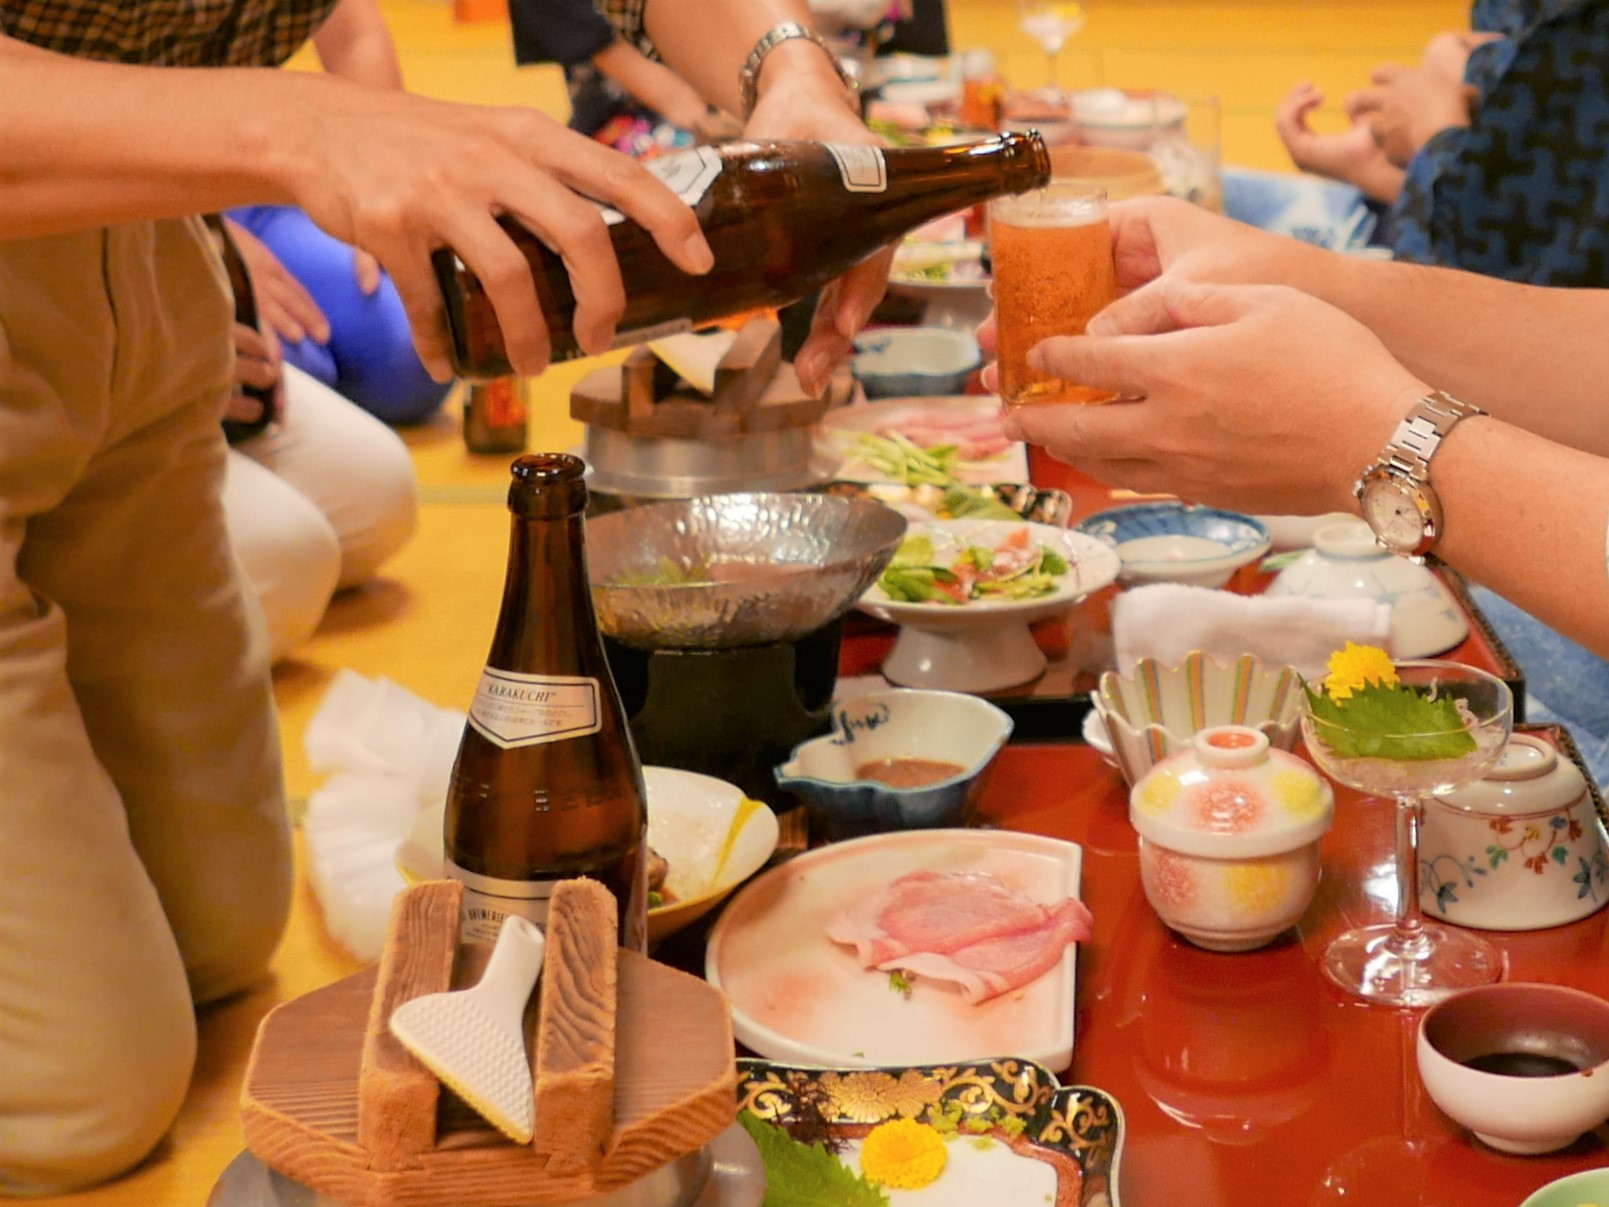 テーブルにたくさんの料理やビールなどが並んでいる忘年会の写真です。手前の席ではビールをお酌する光景も散見されます